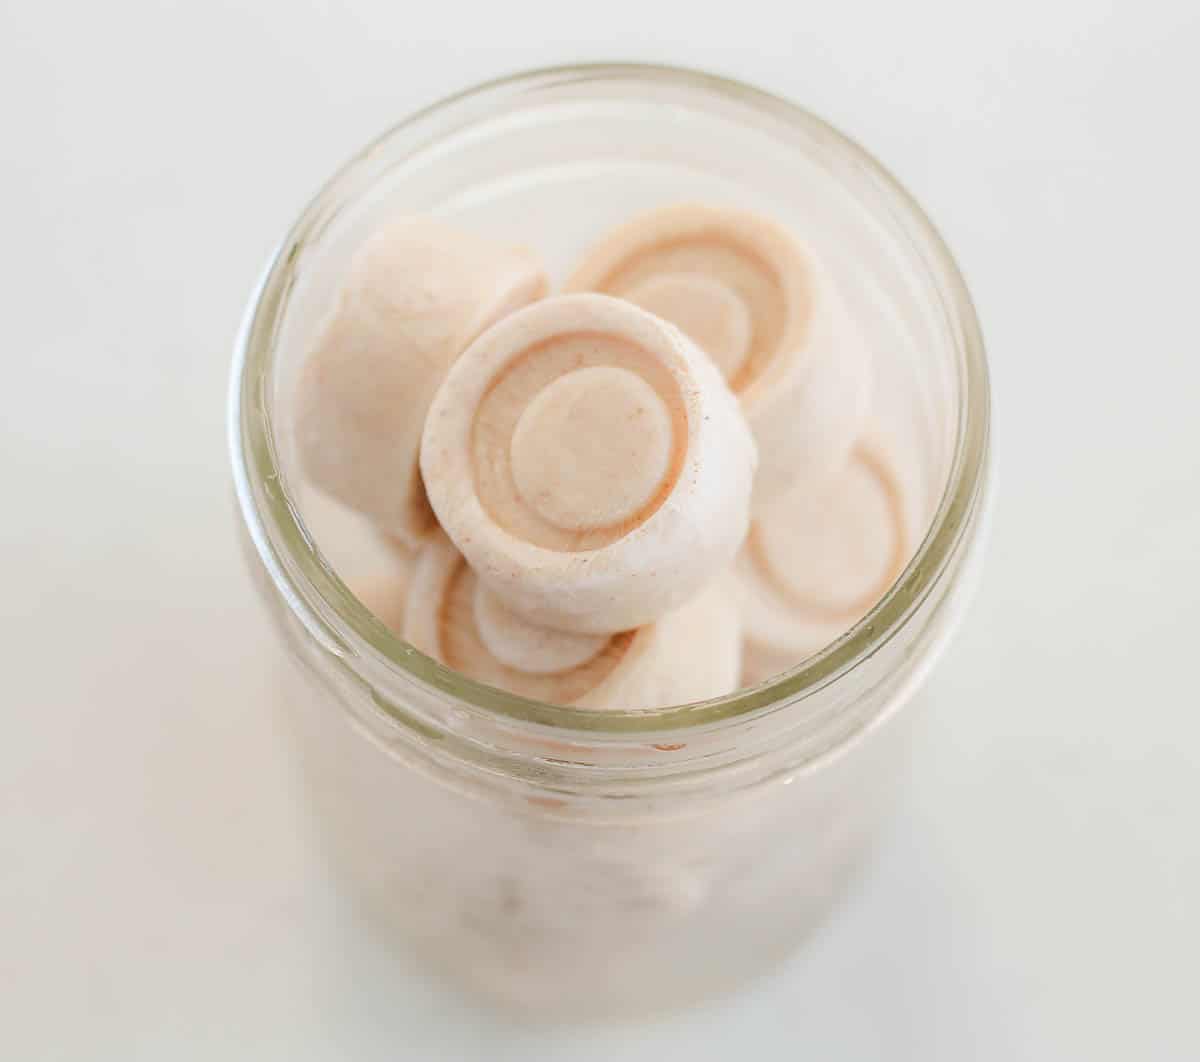 frozen yogurt bites in a frosty glass jar